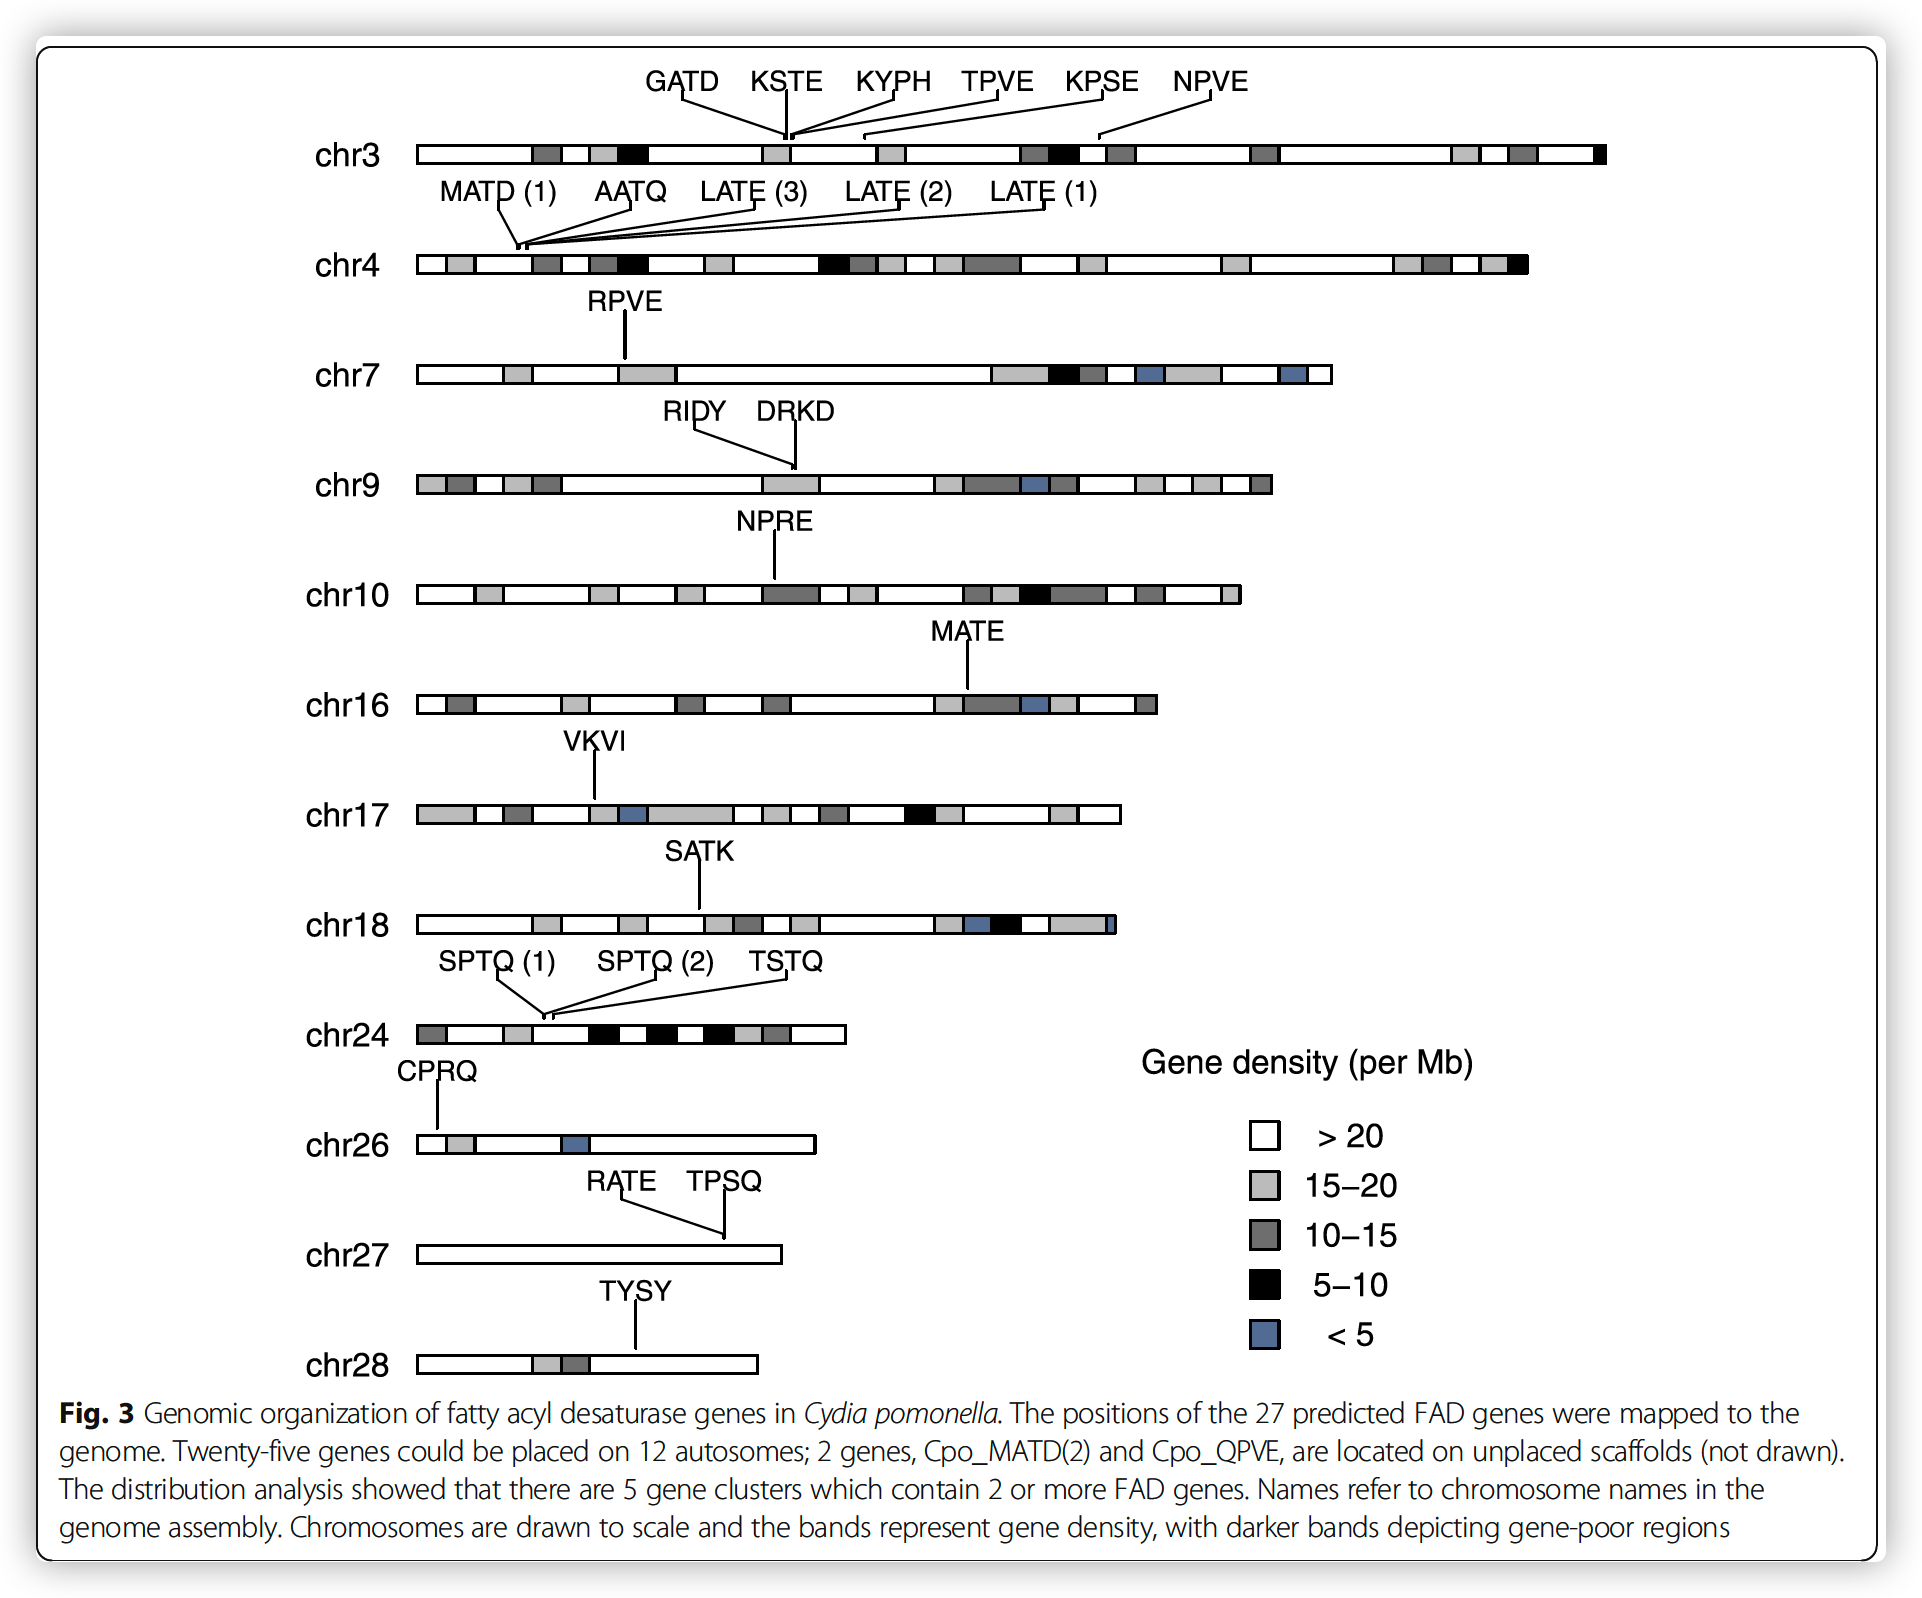 Genomic organization of fatty acyl desaturase genes in Cydia pomonella.